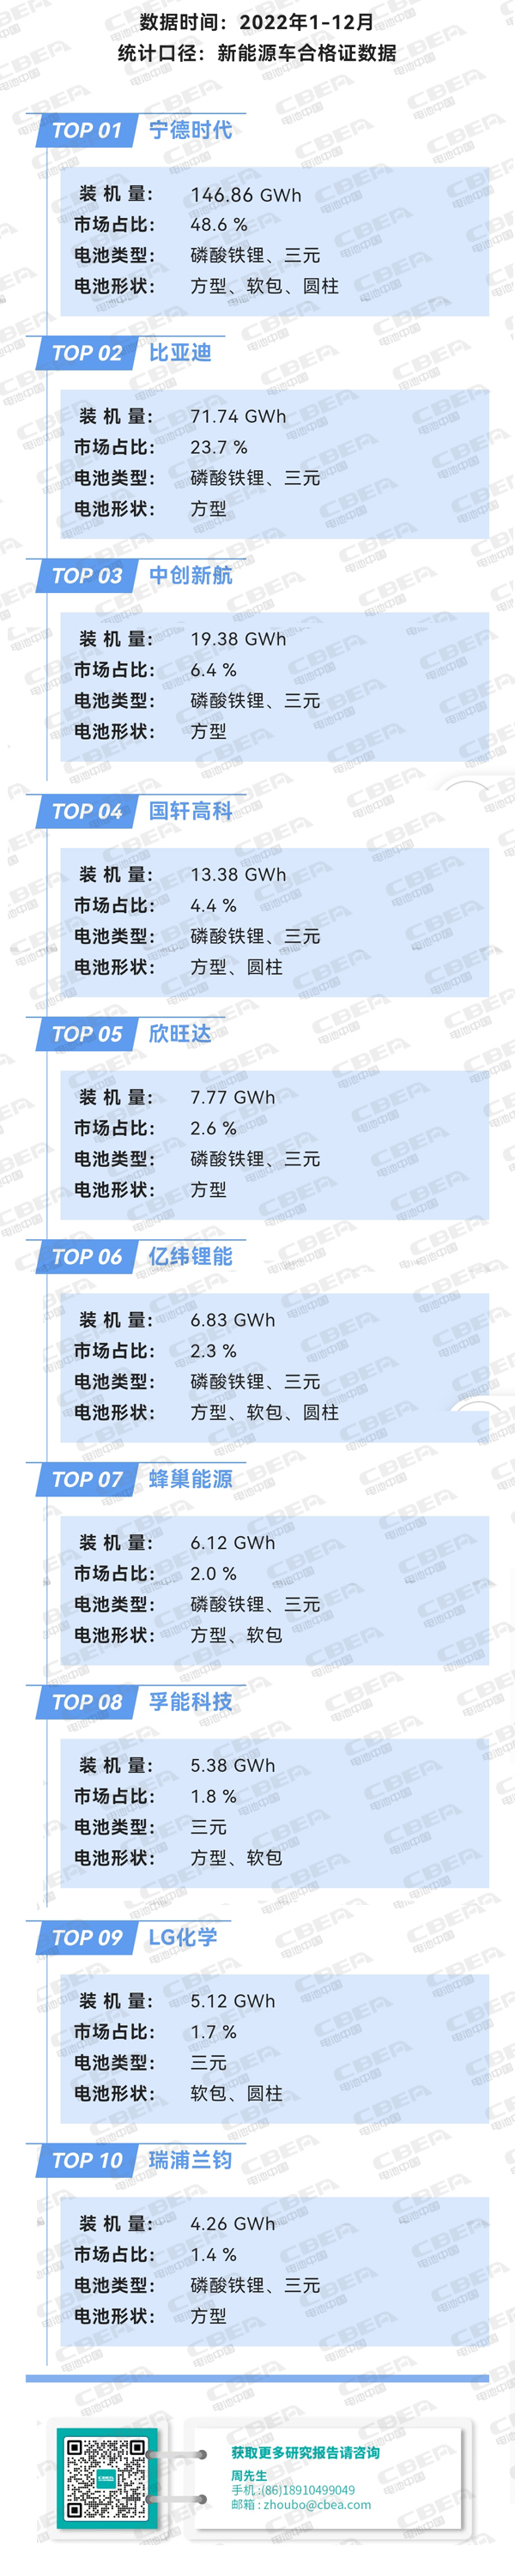 2022年中国市场动力电池装机量排行TOP10